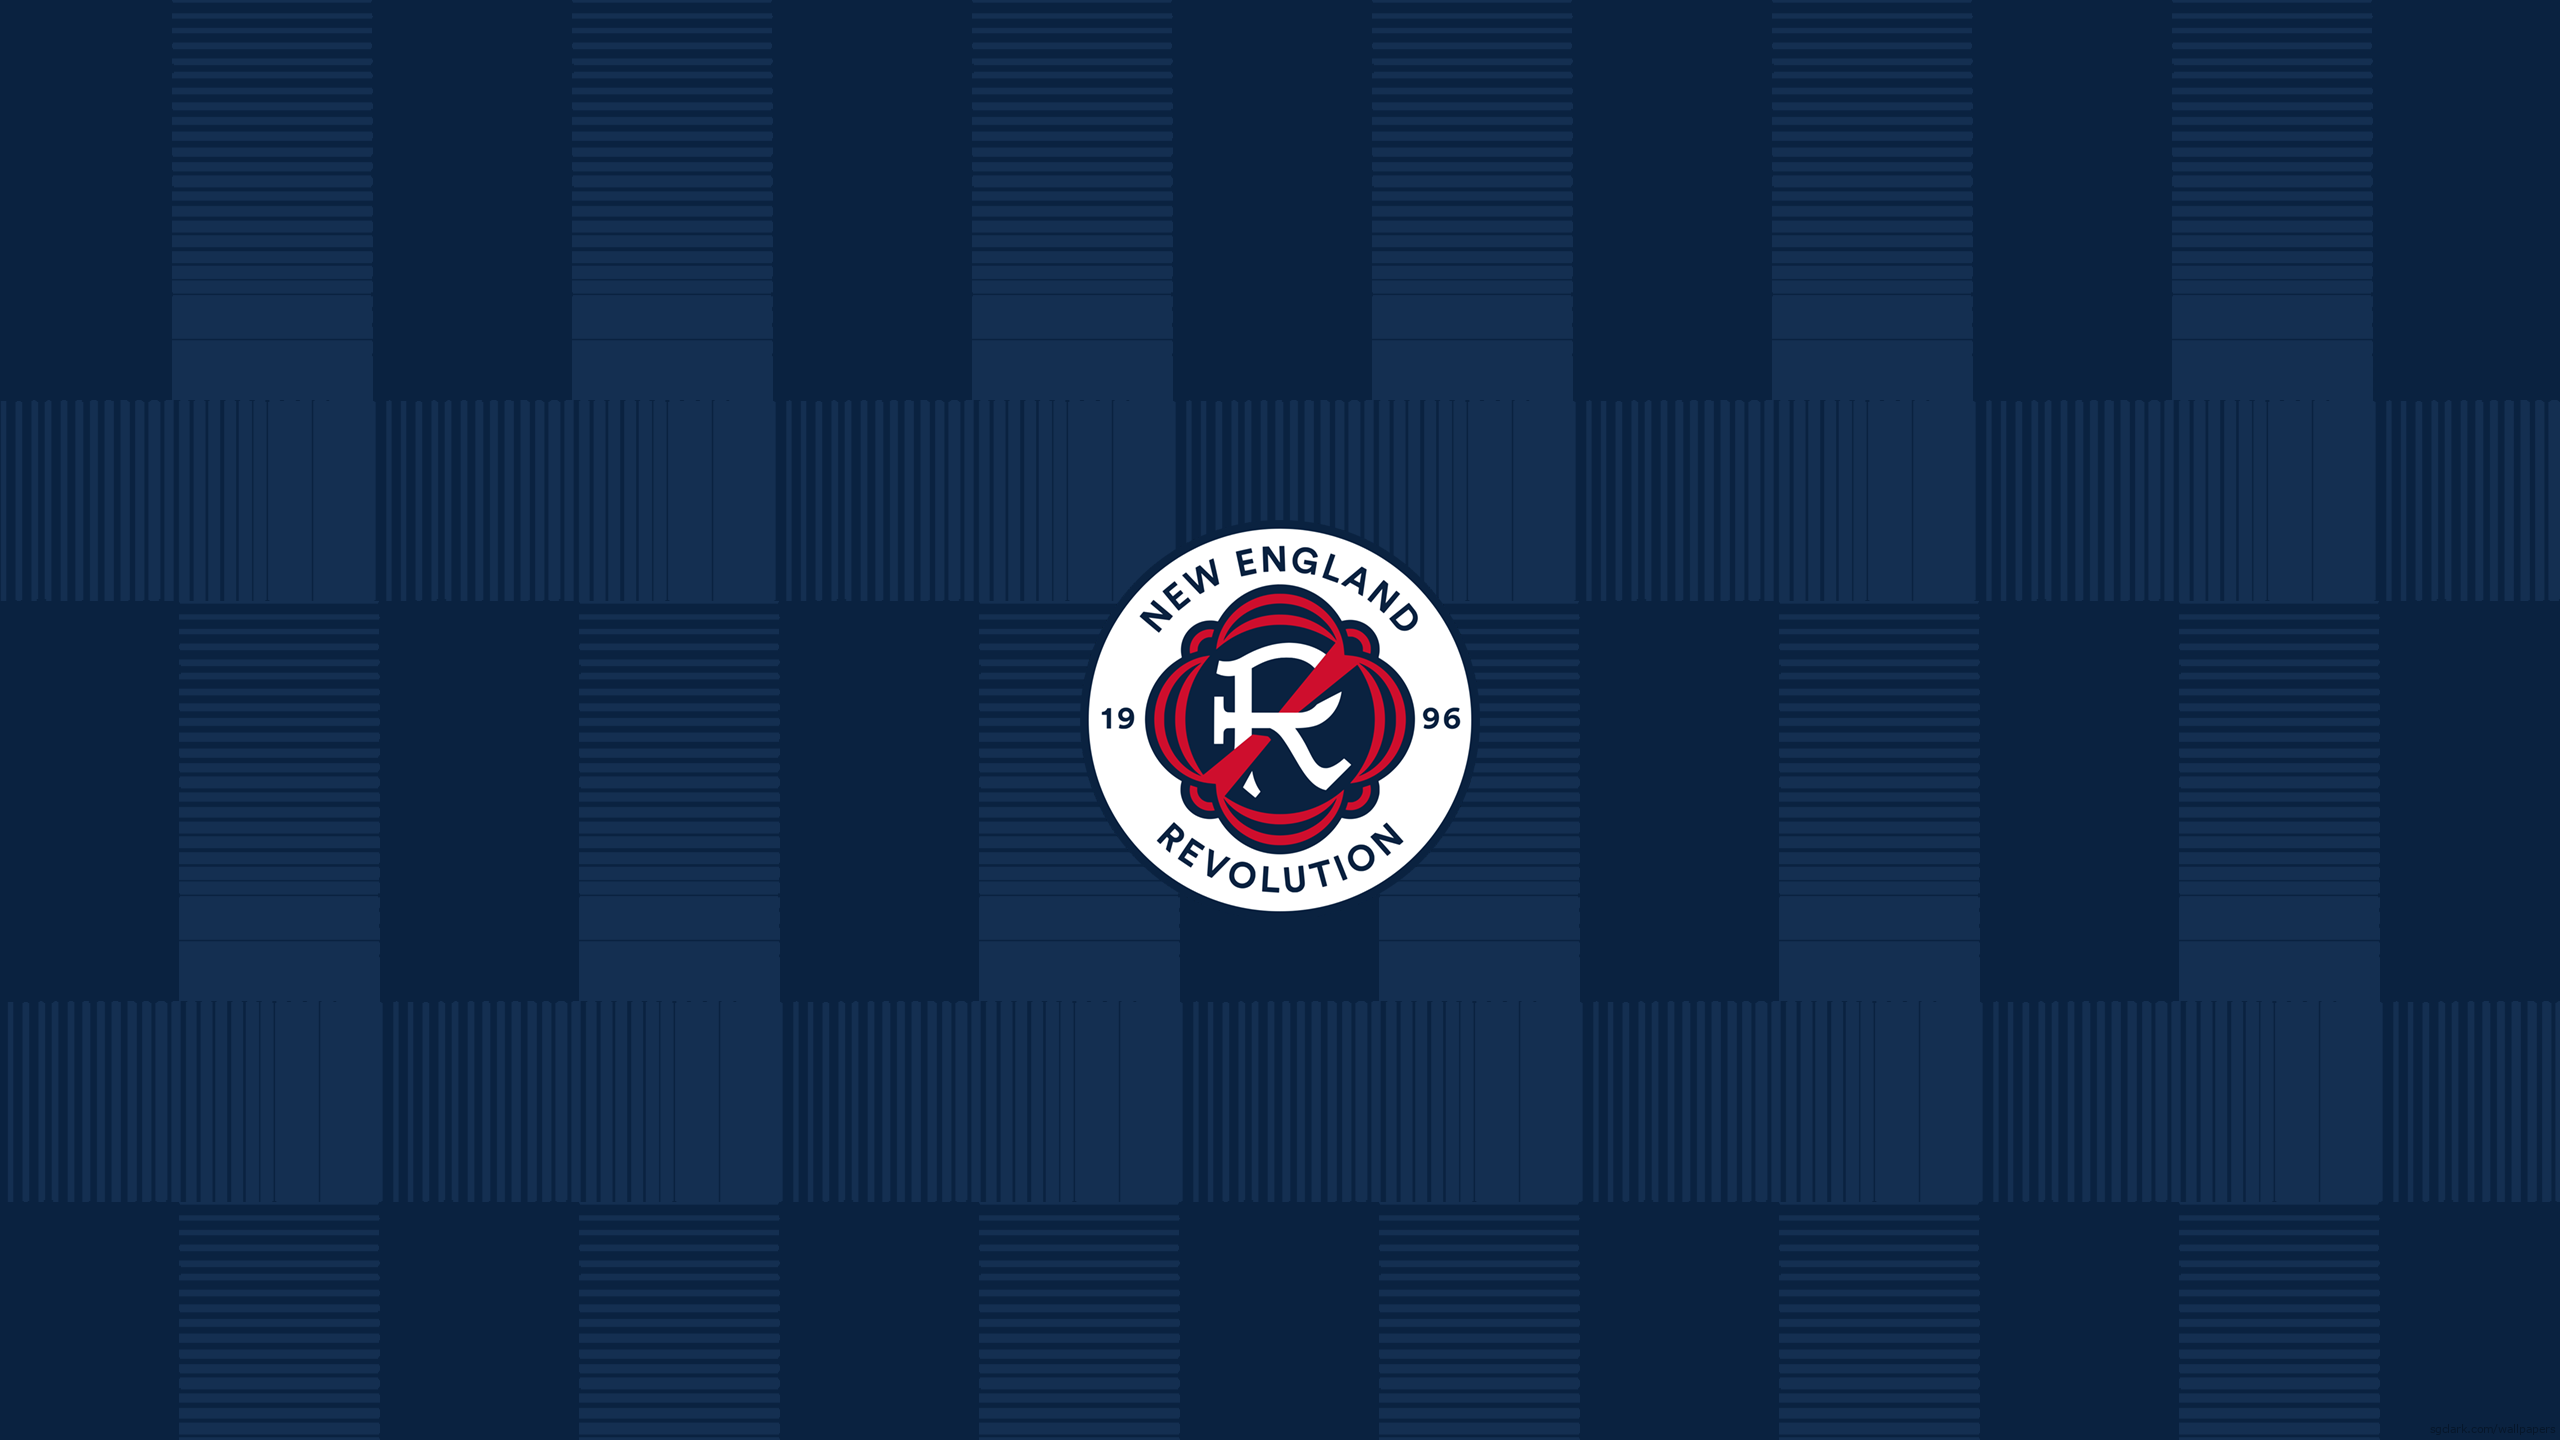 New England Revolution - Major League Soccer - Square Bettor